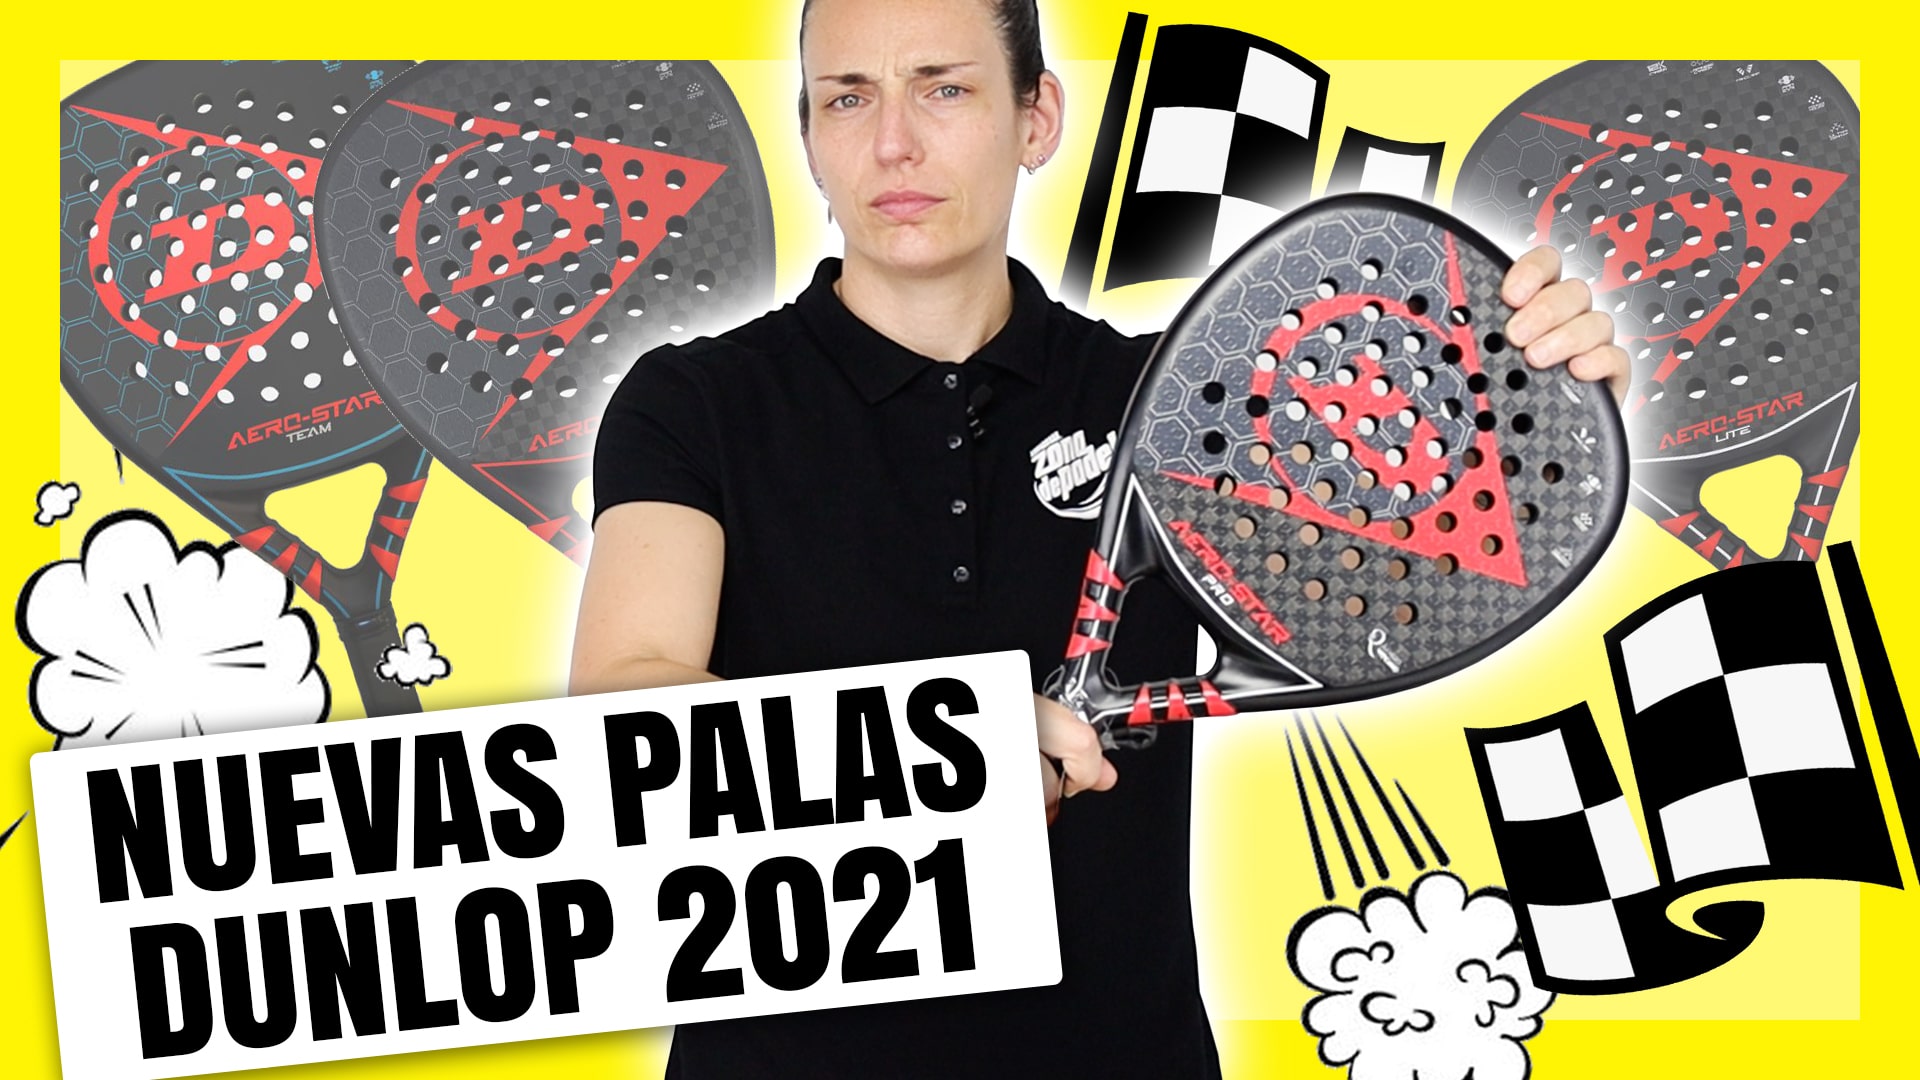 Palas pádel Dunlop 2021, descubre todas las novedades - Padel